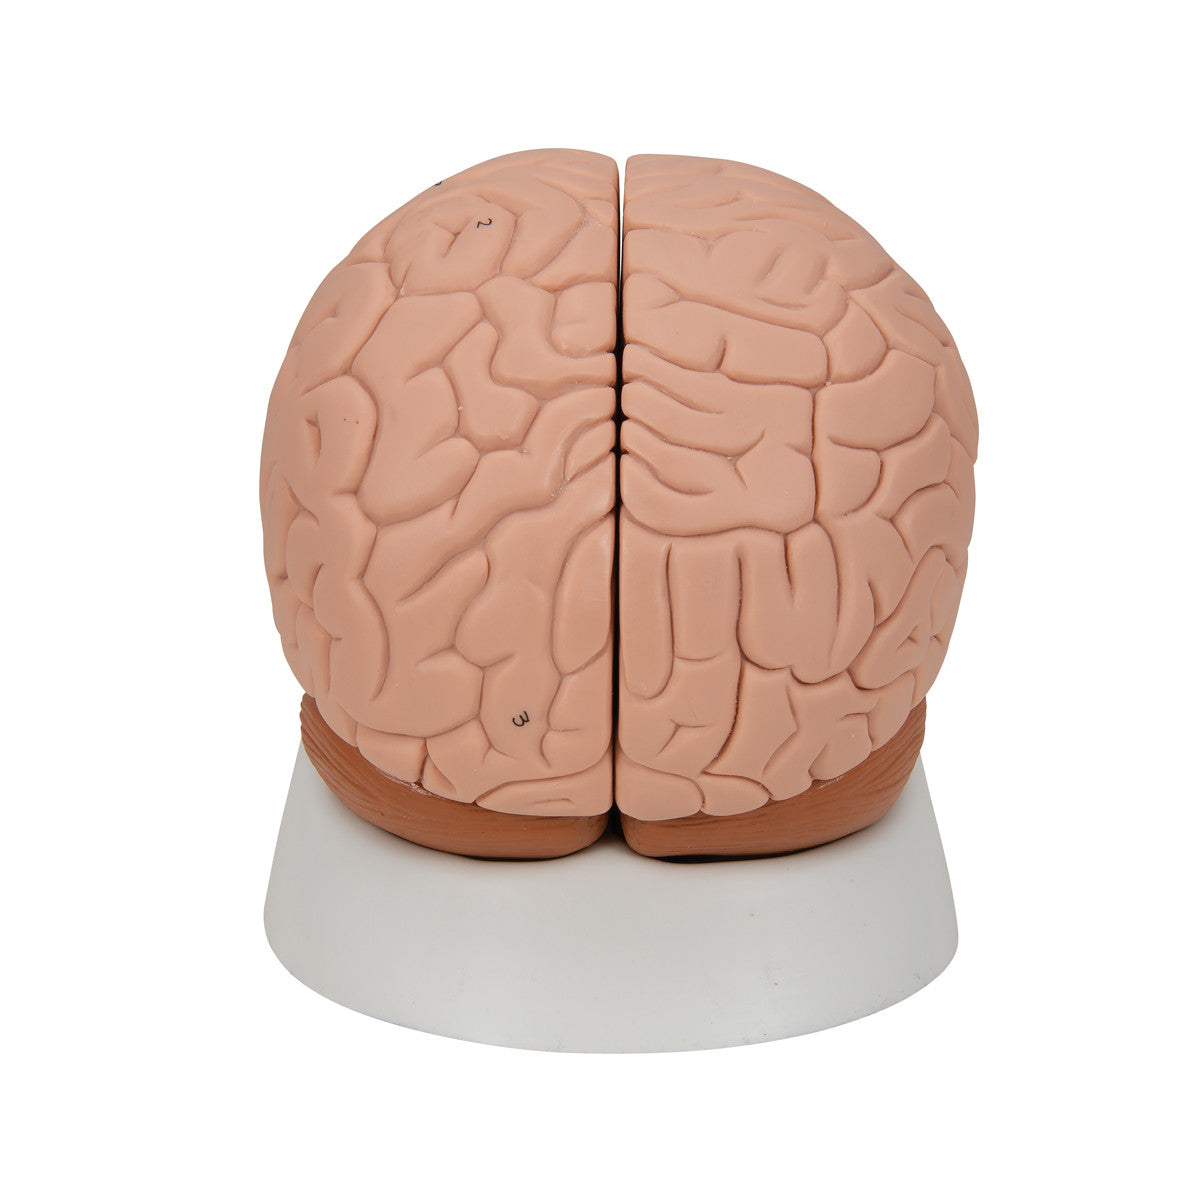 Brain Model, 2 parts | 3B Scientific C15